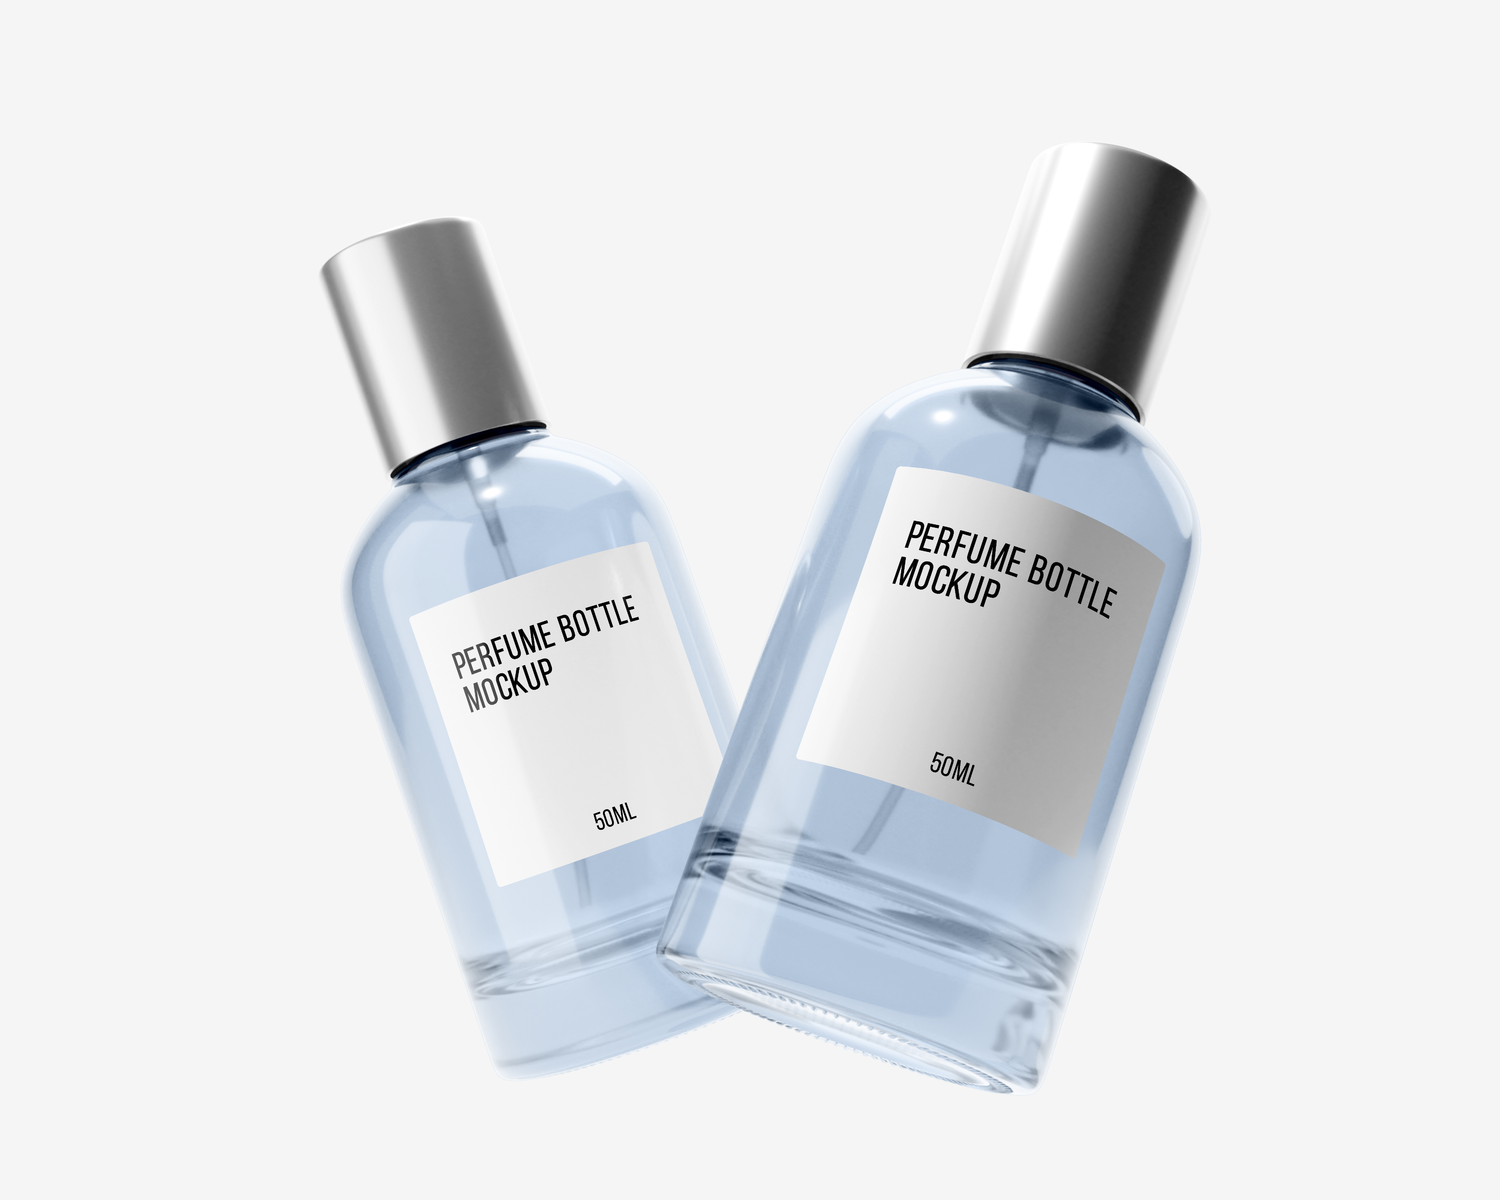 4516 4款香水喷雾瓶透明塑料玻璃瓶包装PS样机 50ml Perfume Bottle Mockup Vol@GOOODME.COM.2